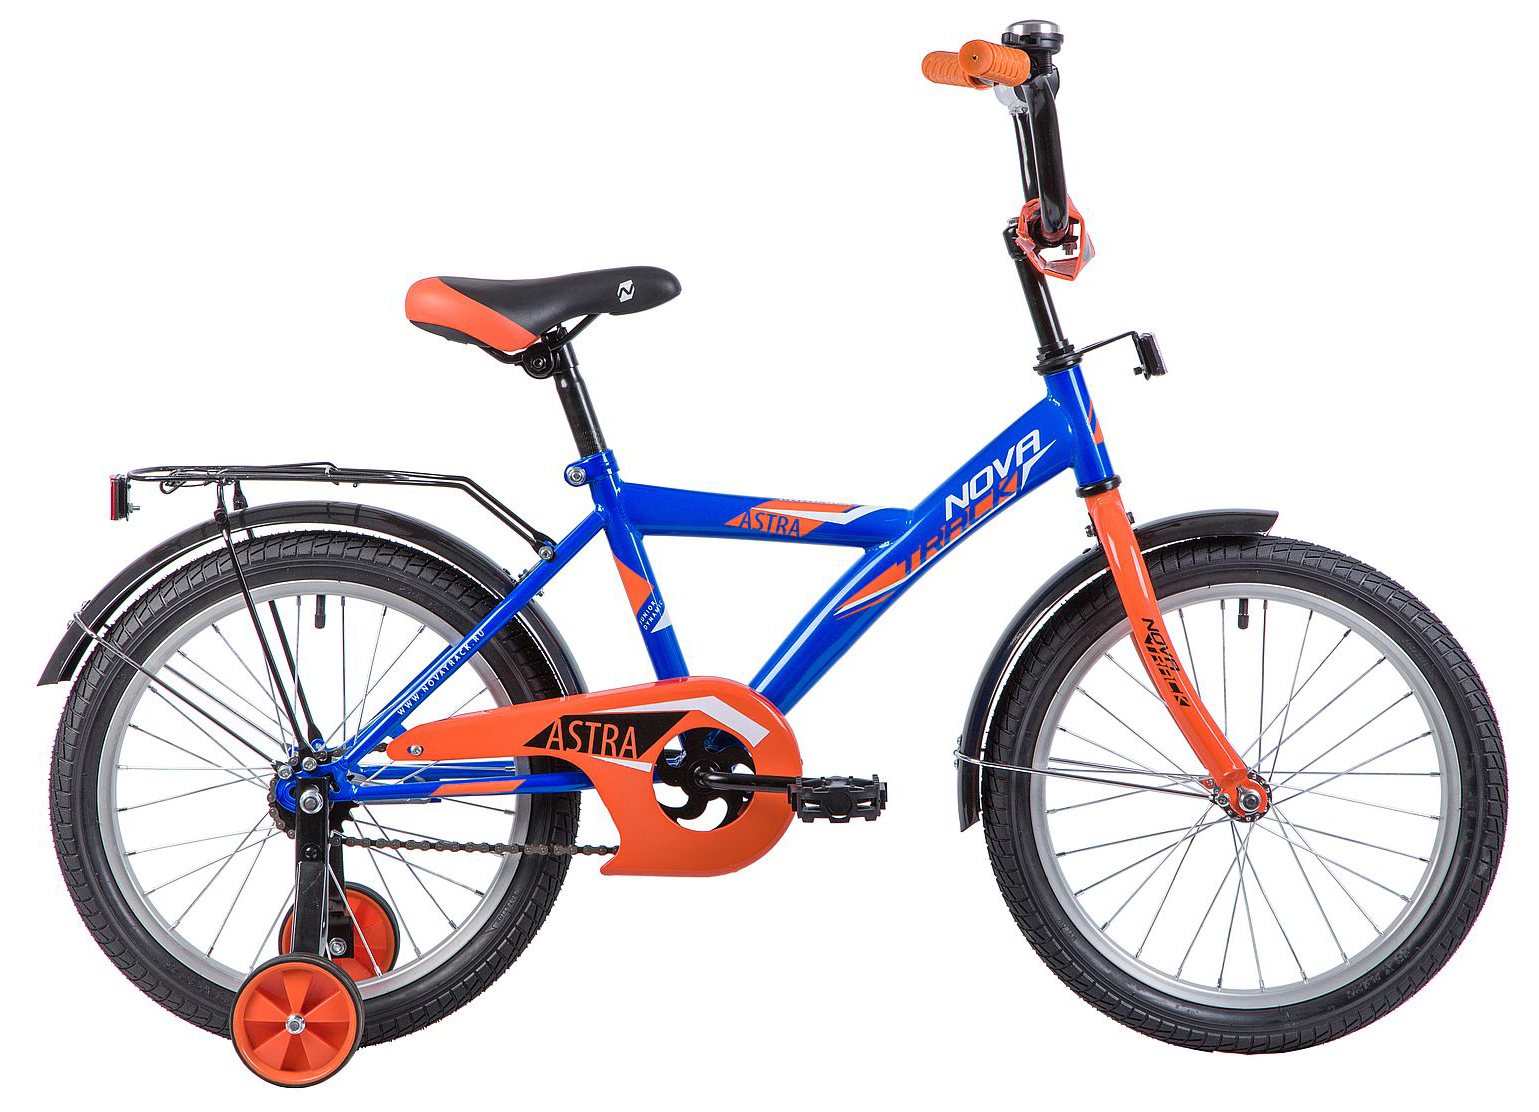  Отзывы о Детском велосипеде Novatrack Astra 18 2020